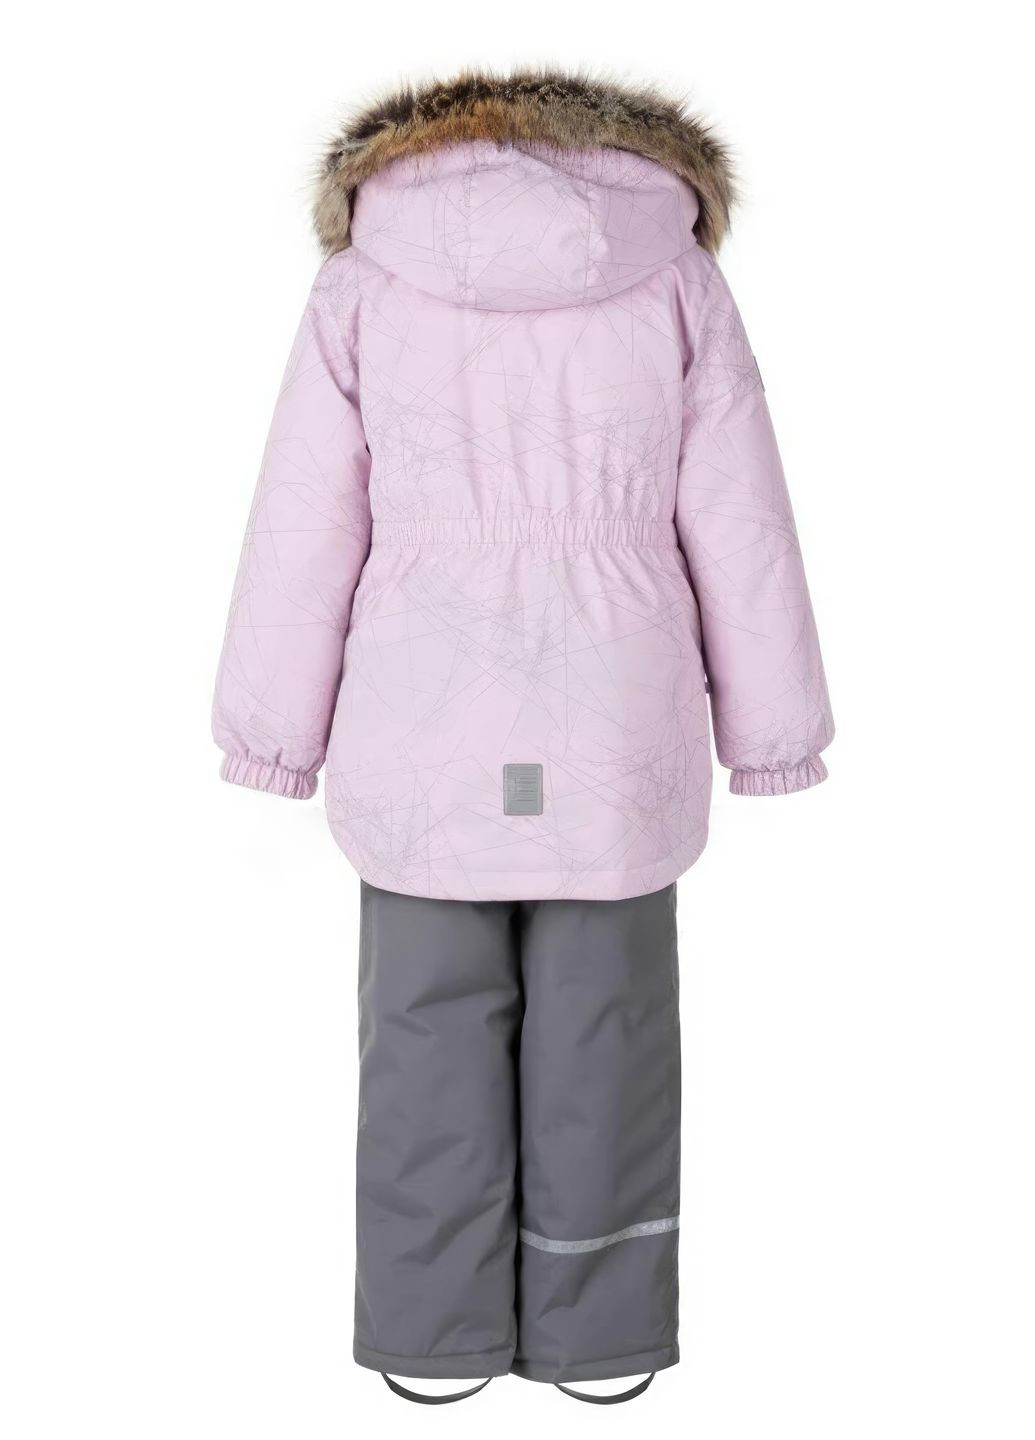 Розовый зимний зимний комплект (куртка + полукомбинезон) для девочки 9214 110 см розовый 69325 Lenne